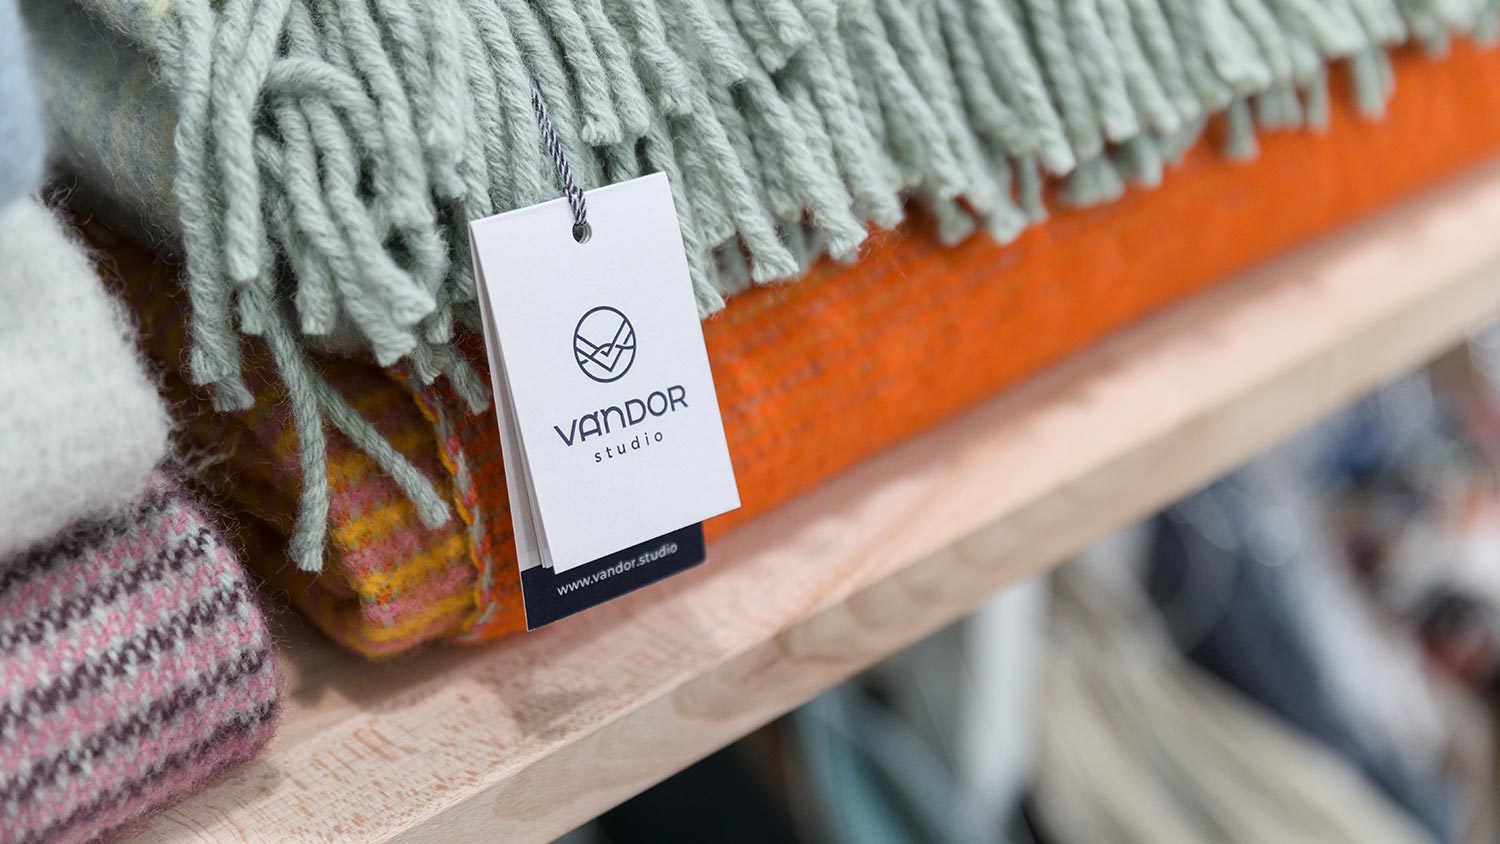 Vandor Studio's paper hangtag with details of wool blankets